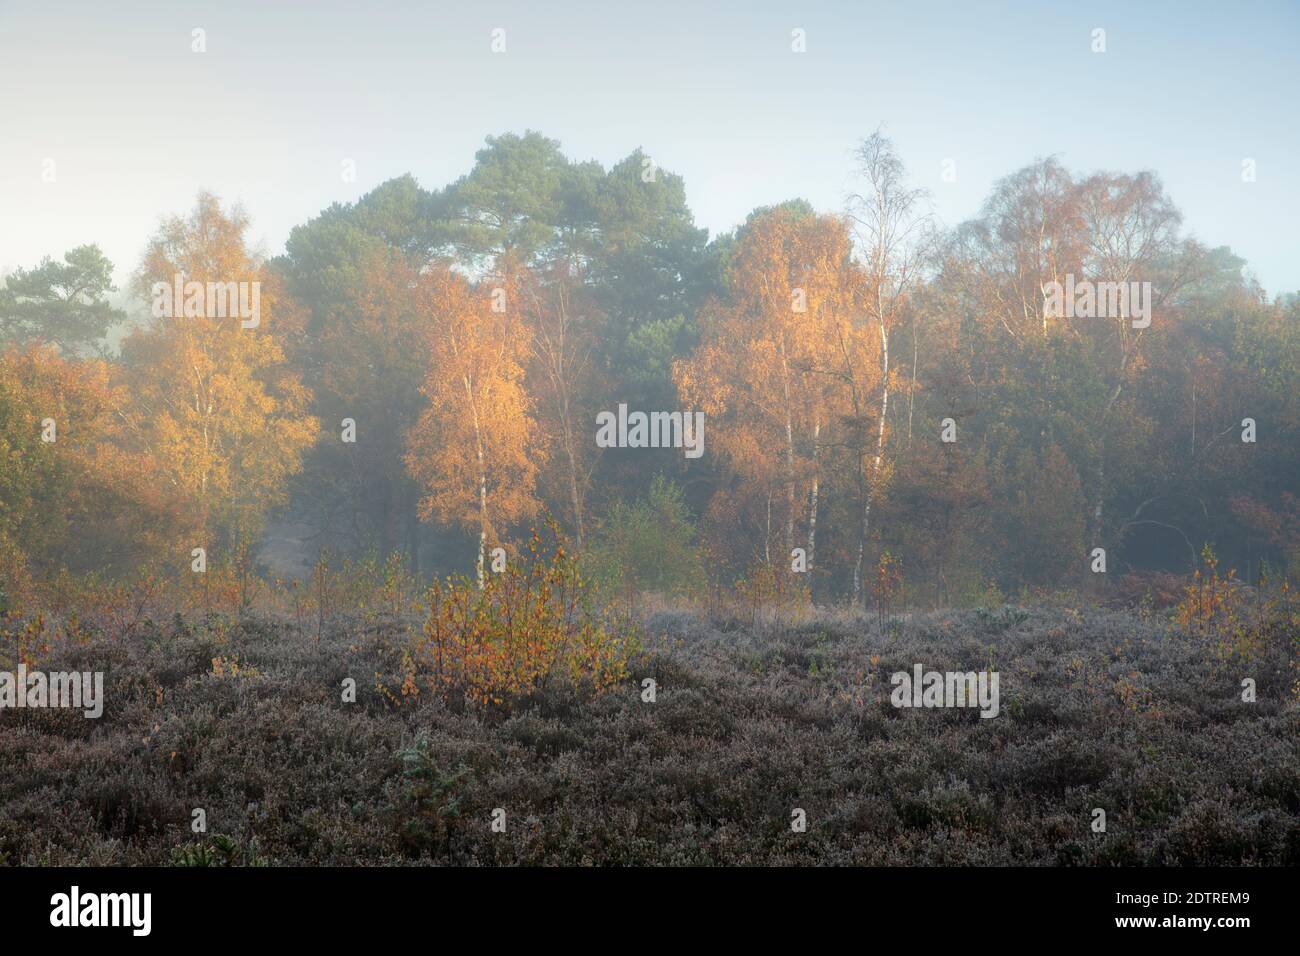 Feuilles d'automne sur les bouleaux argentés dans la brume de l'aube, Newtown Common, Burghclere, Hampshire, Angleterre, Royaume-Uni, Europe Banque D'Images